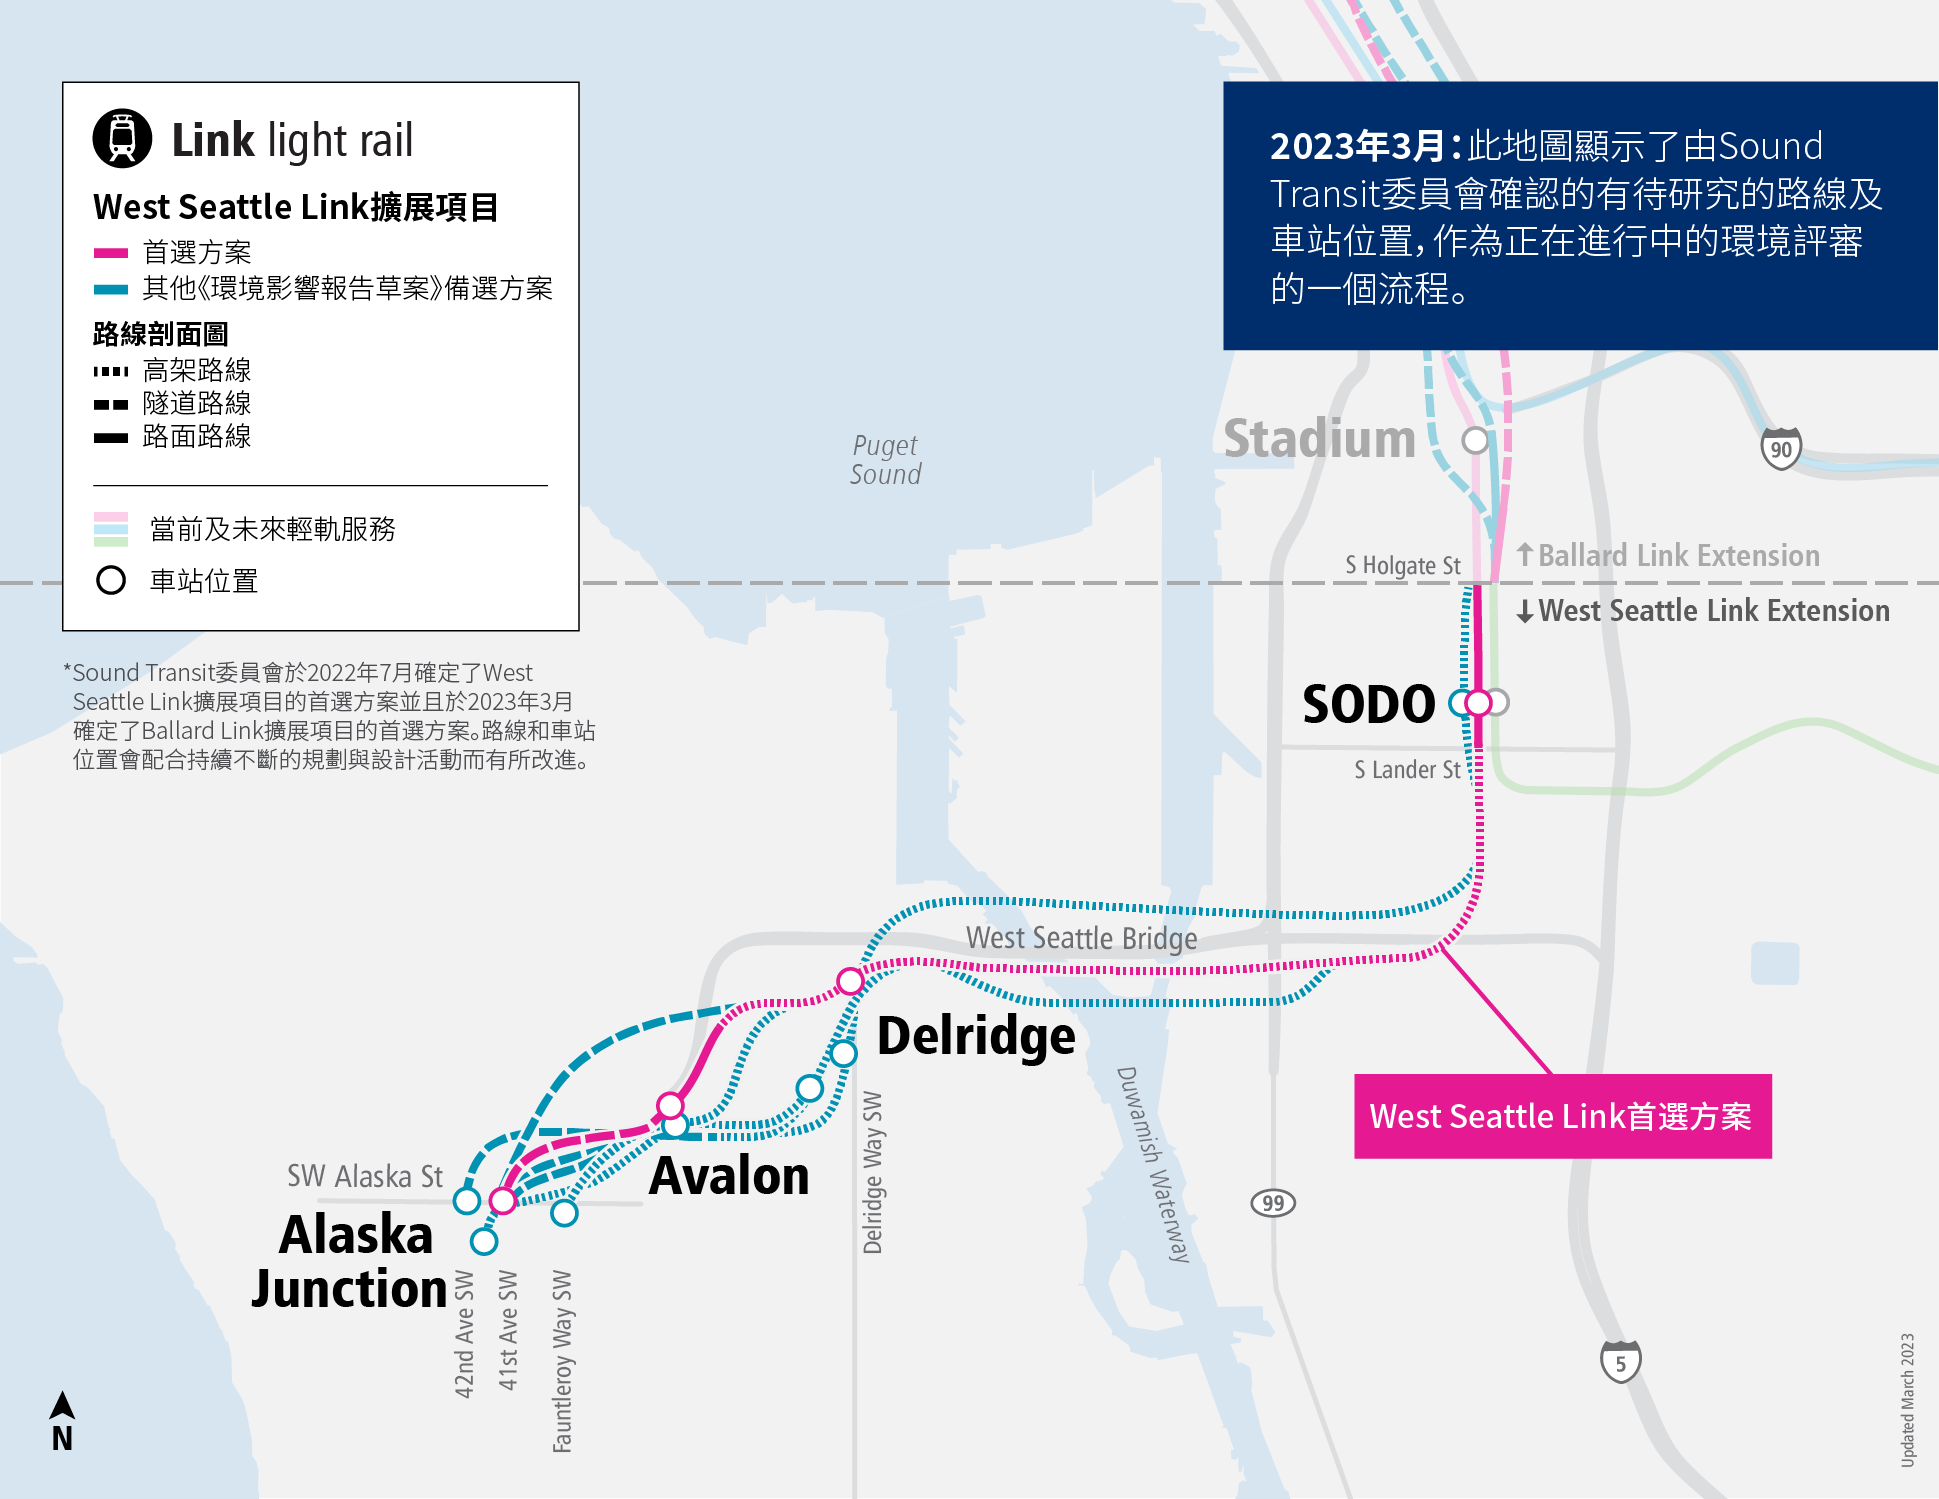 West Seattle Link擴展項目地圖的圖片，顯示我們目前正在評估的首選方案和其他備選方案。該地圖同時涵蓋車站位置，並描述備選方案屬於高架、隧道還是地面形式。 